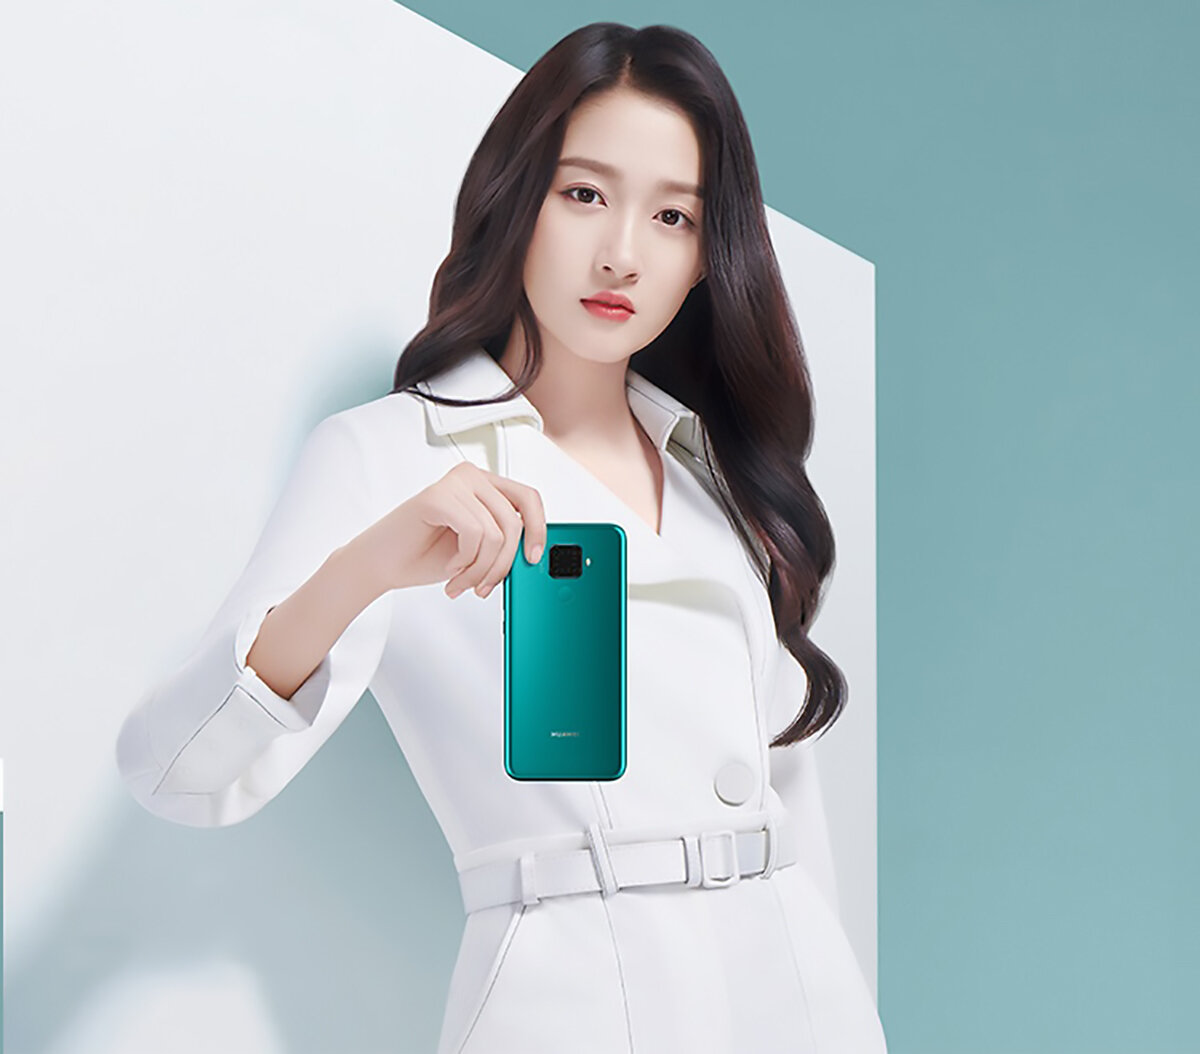 Η Huawei ανακοίνωσε το nova 5i Pro στη Κίνα που μάλλον θα πωλείται ως Mate 30 Lite στην Ευρώπη